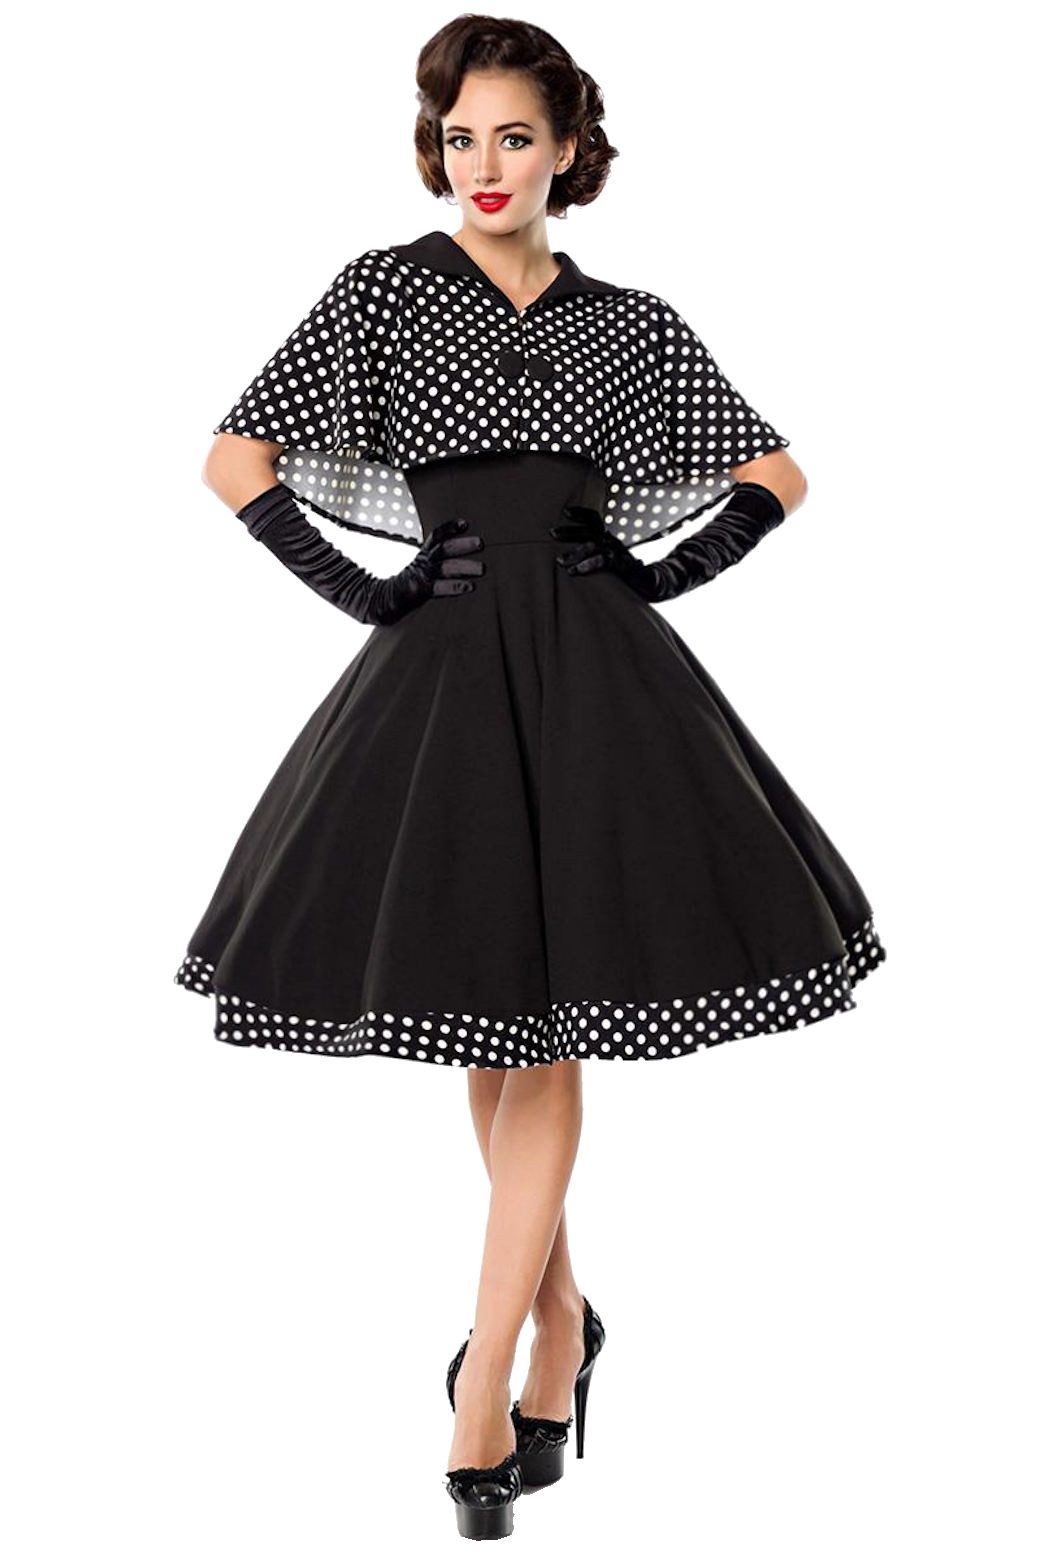 BELSIRA A-Linien-Kleid Swing-Kleid mit Cape Retro Rockabilly Jersey 50er Jahre Pin up Kleid